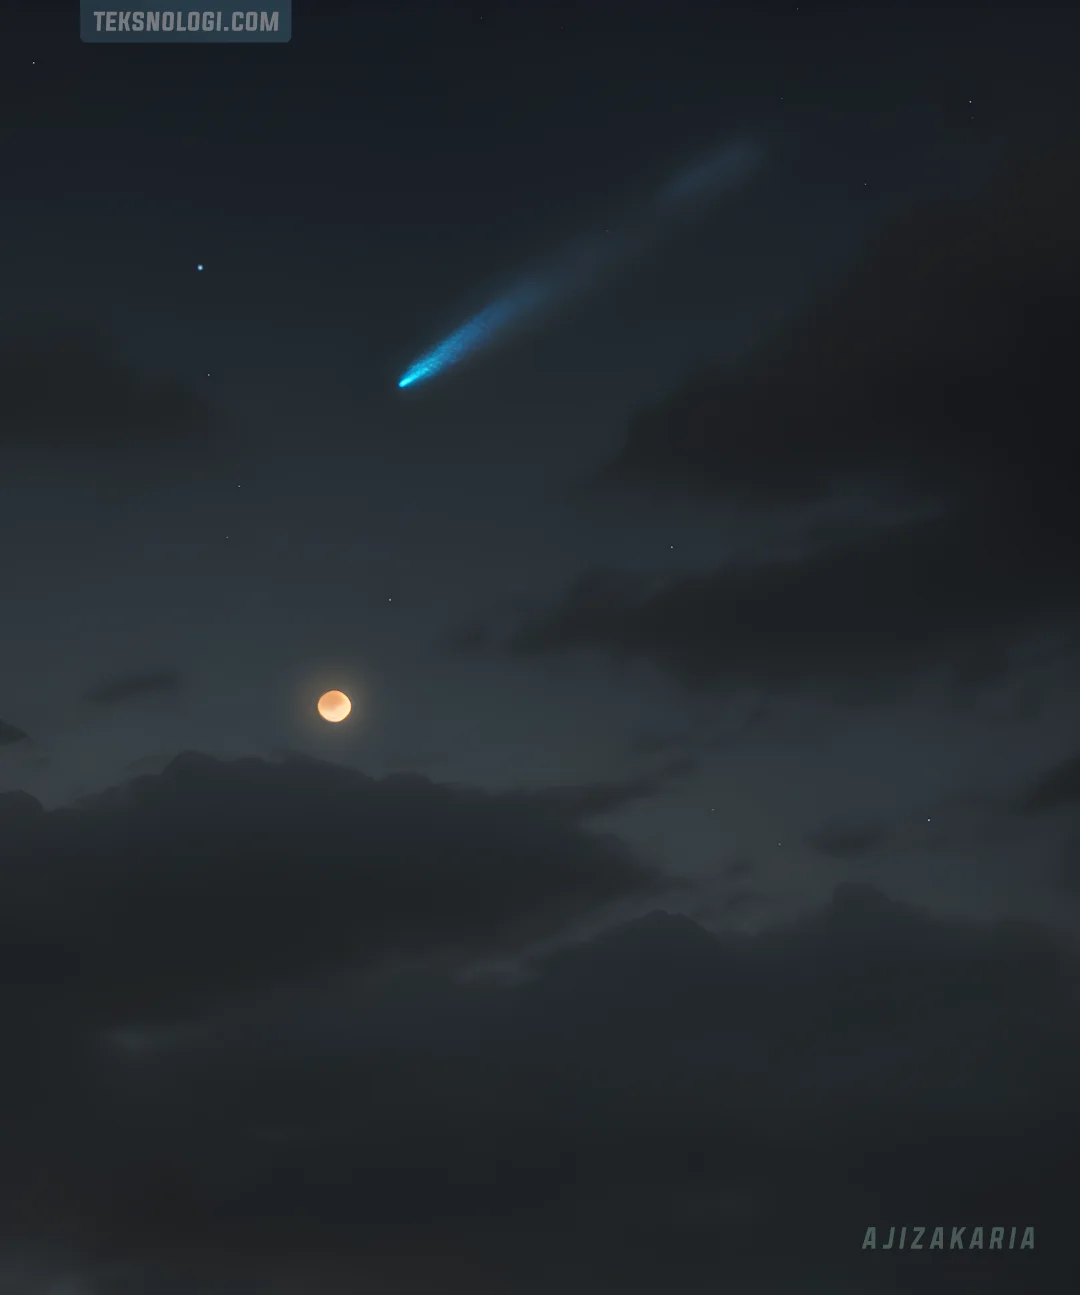 gambar ilustrasi bulan meteor langit anime style ajizakaria